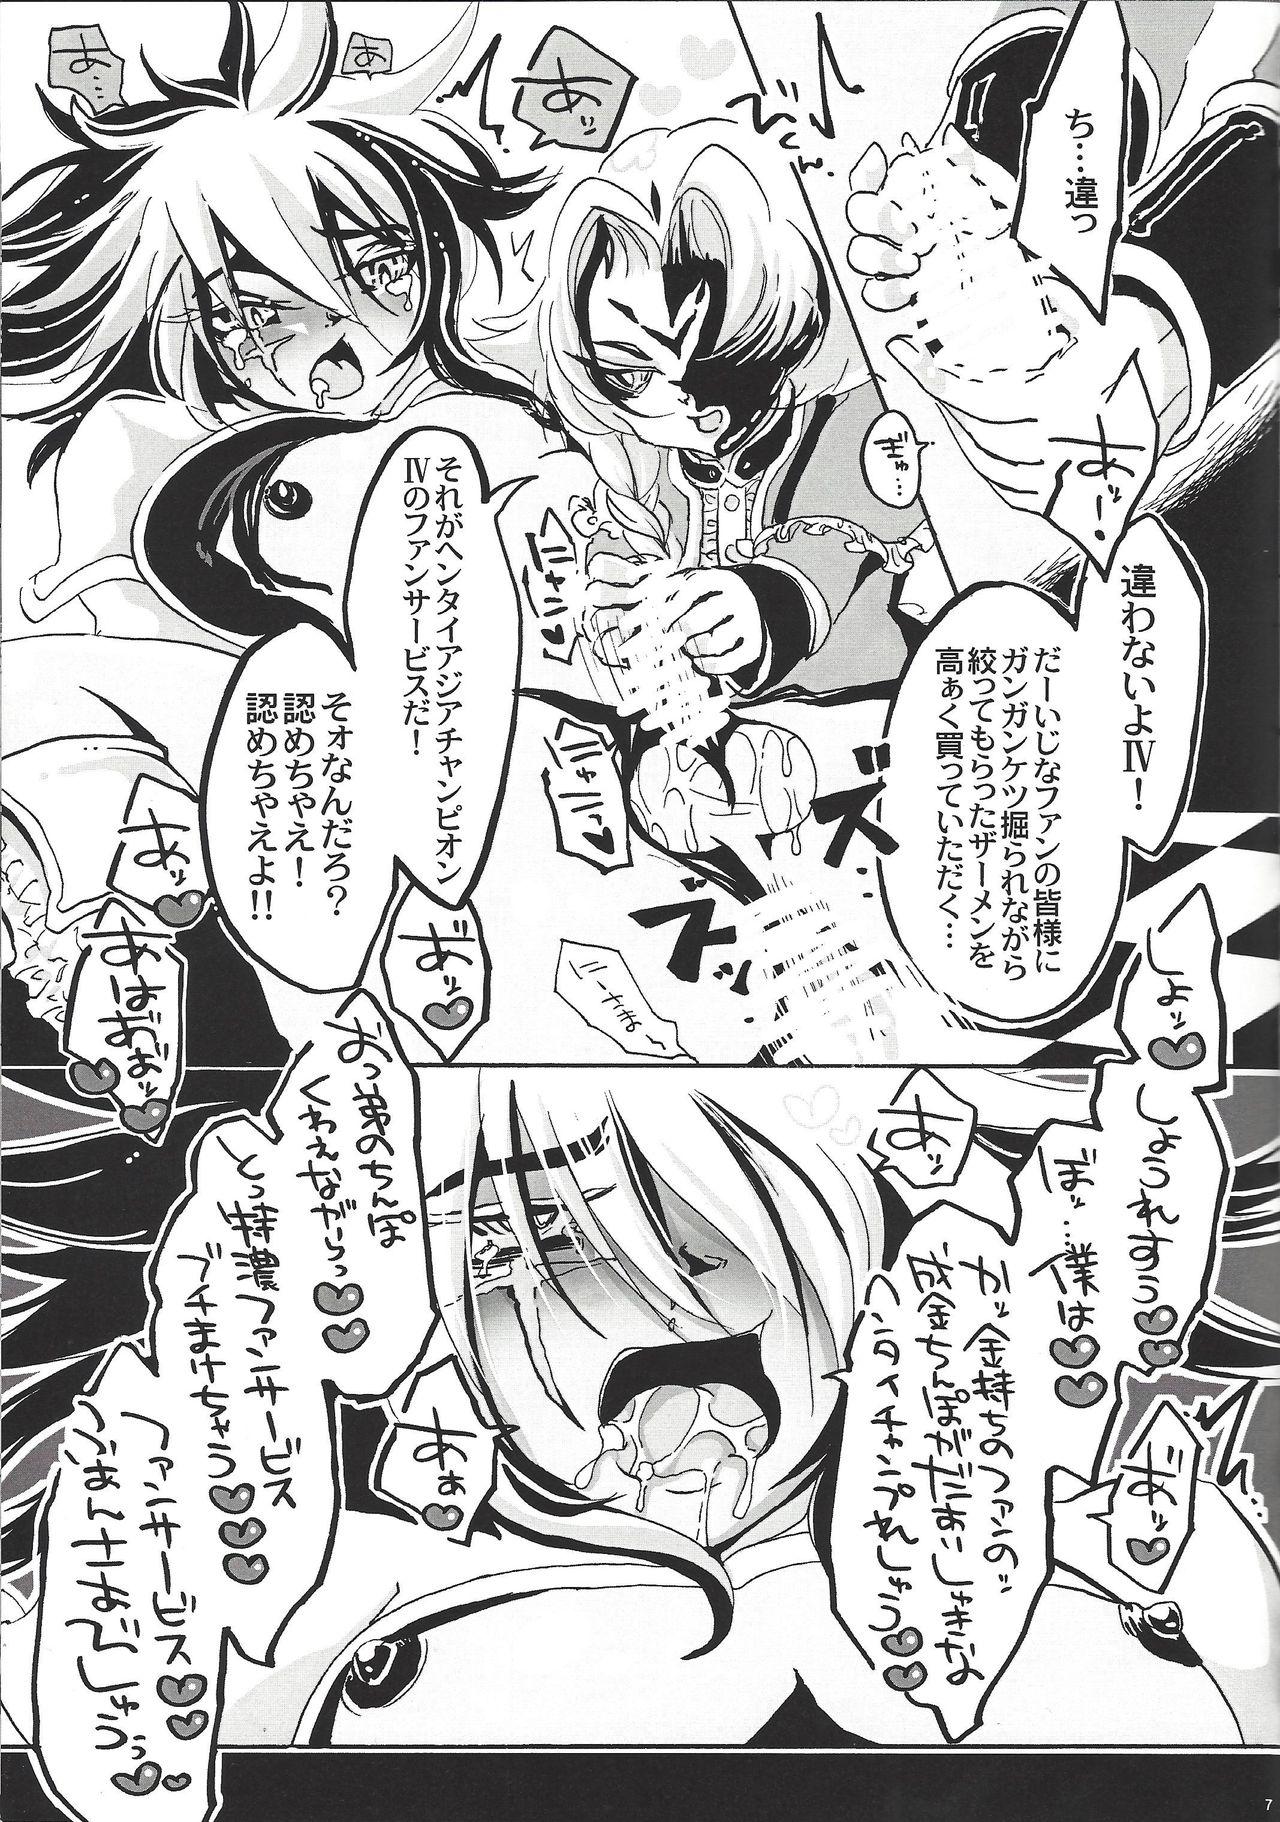 Gloryhole Bokura, zetsubo no mayoigo ni natte - Yu-gi-oh zexal Gaygroup - Page 8